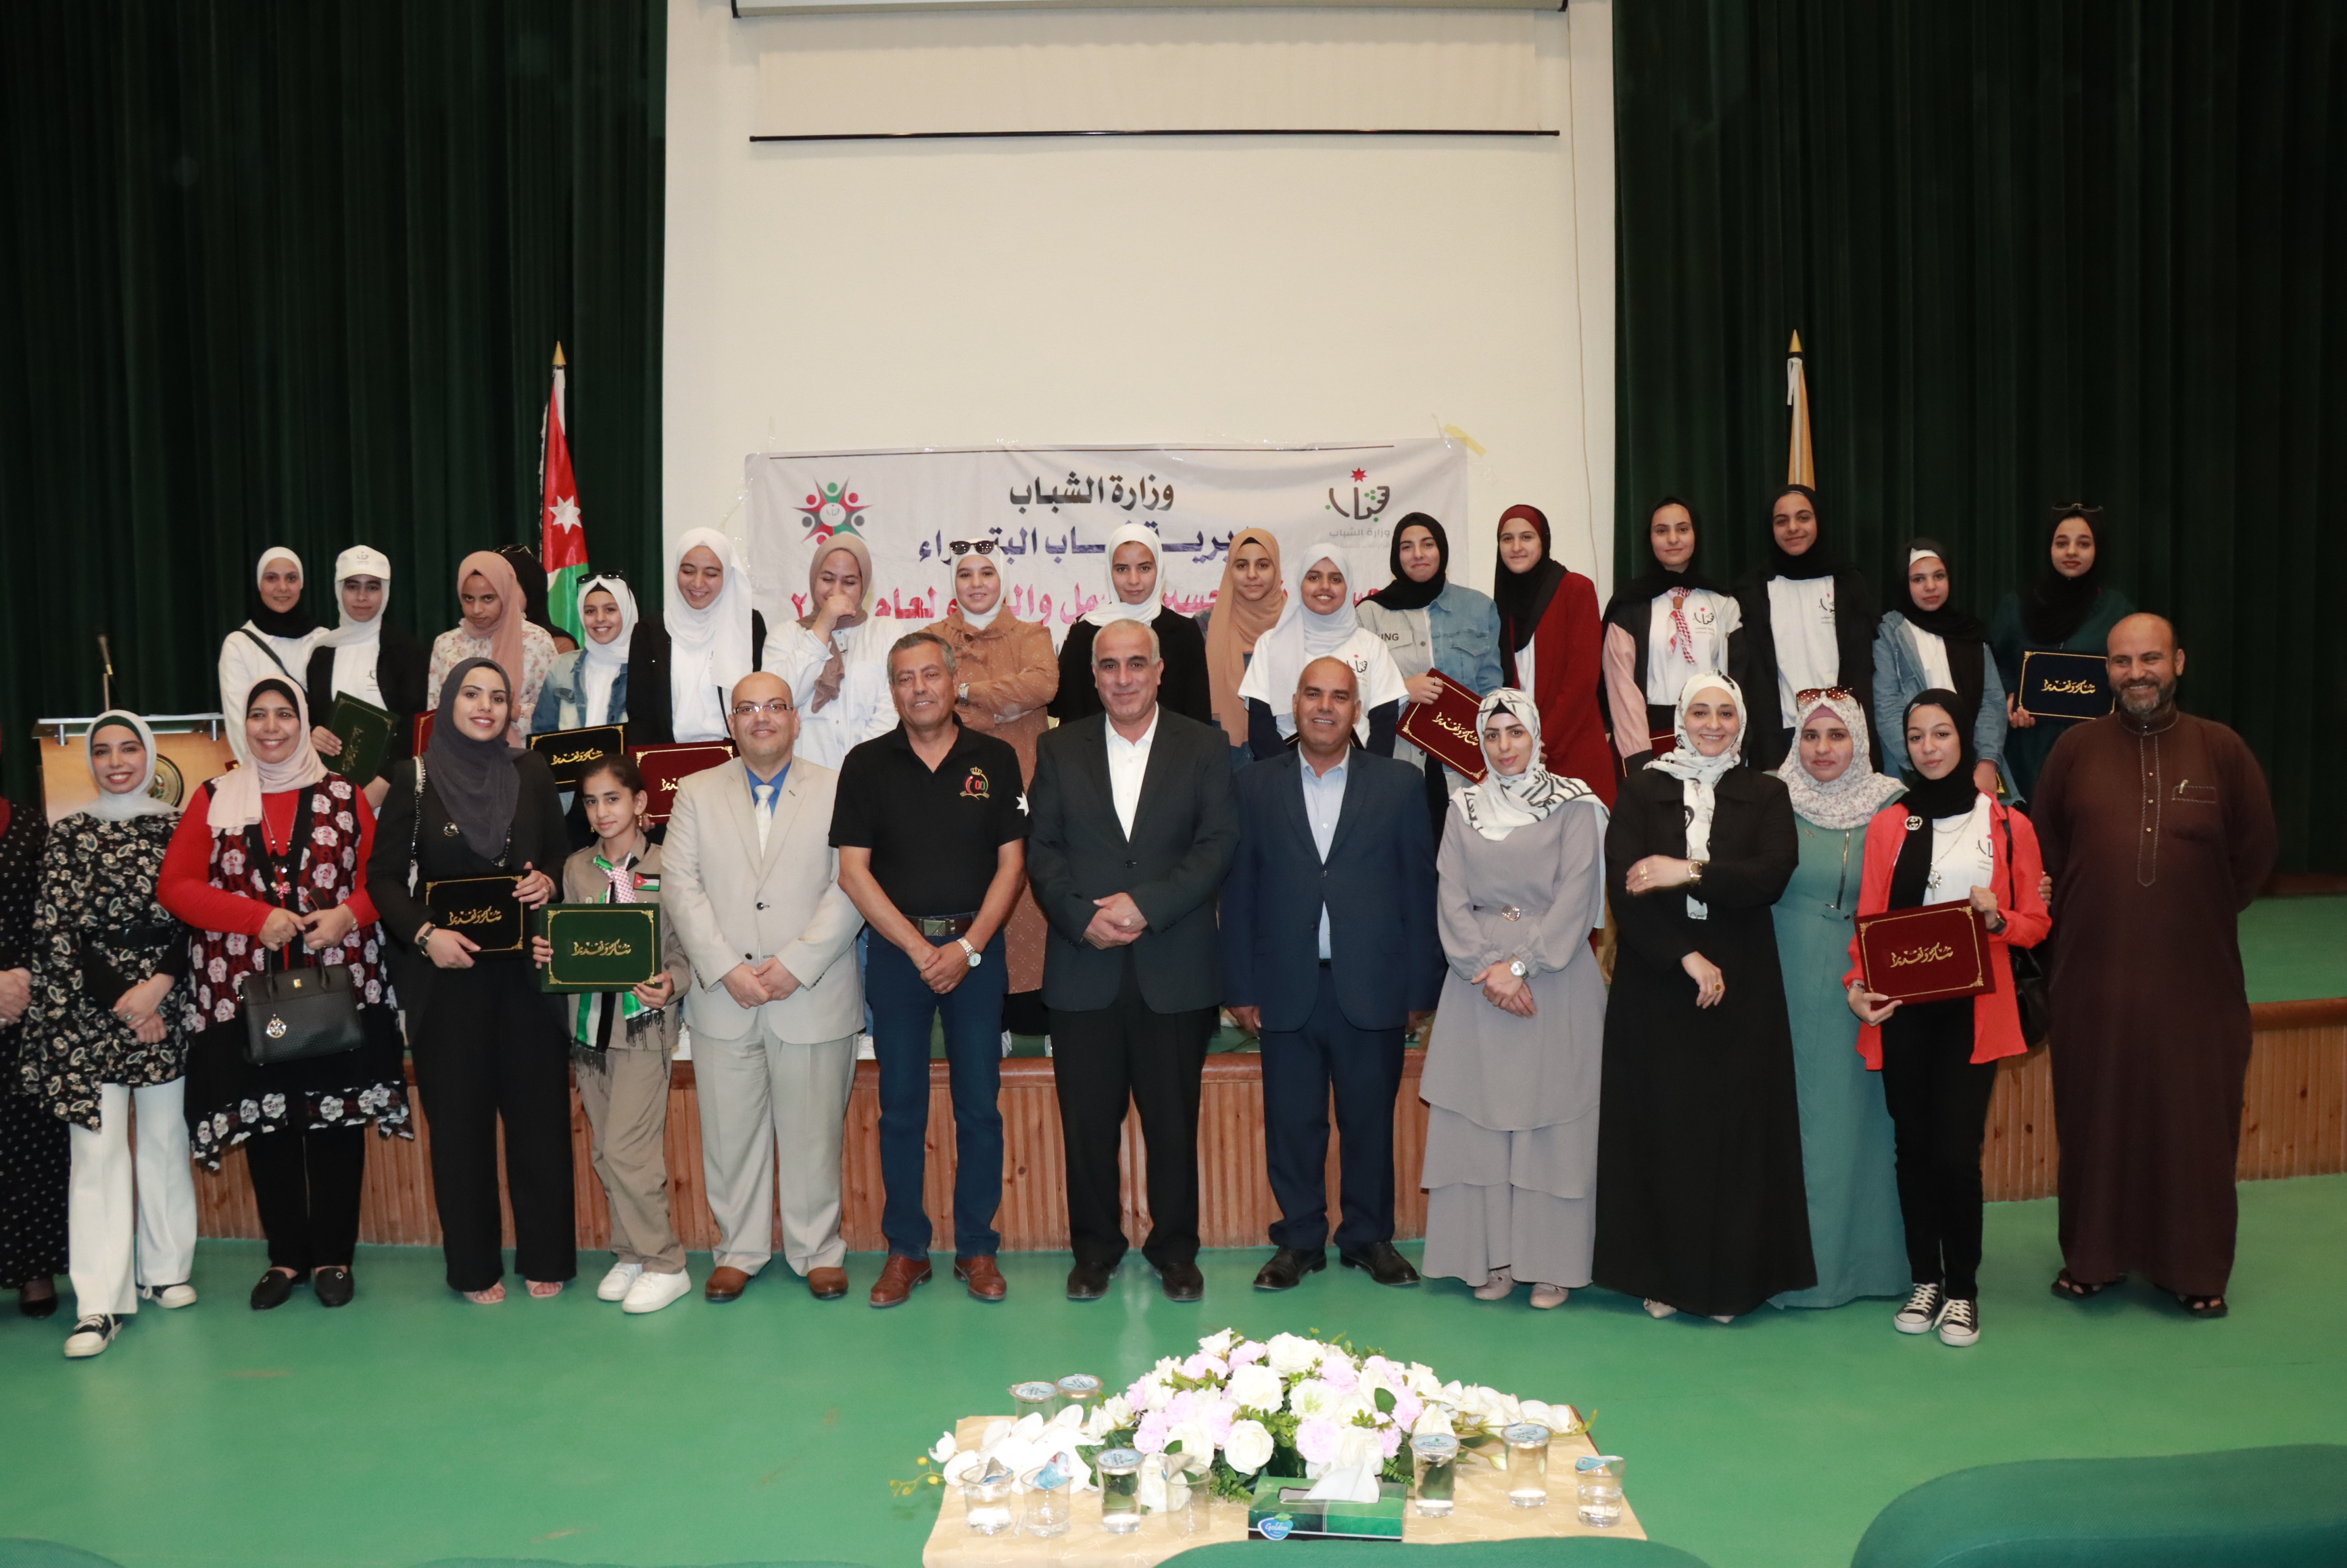 رئيس جامعة الحسين بن طلال يرعى حفل تخريج المشاركات في معسكرات الحسين للعمل والبناء.